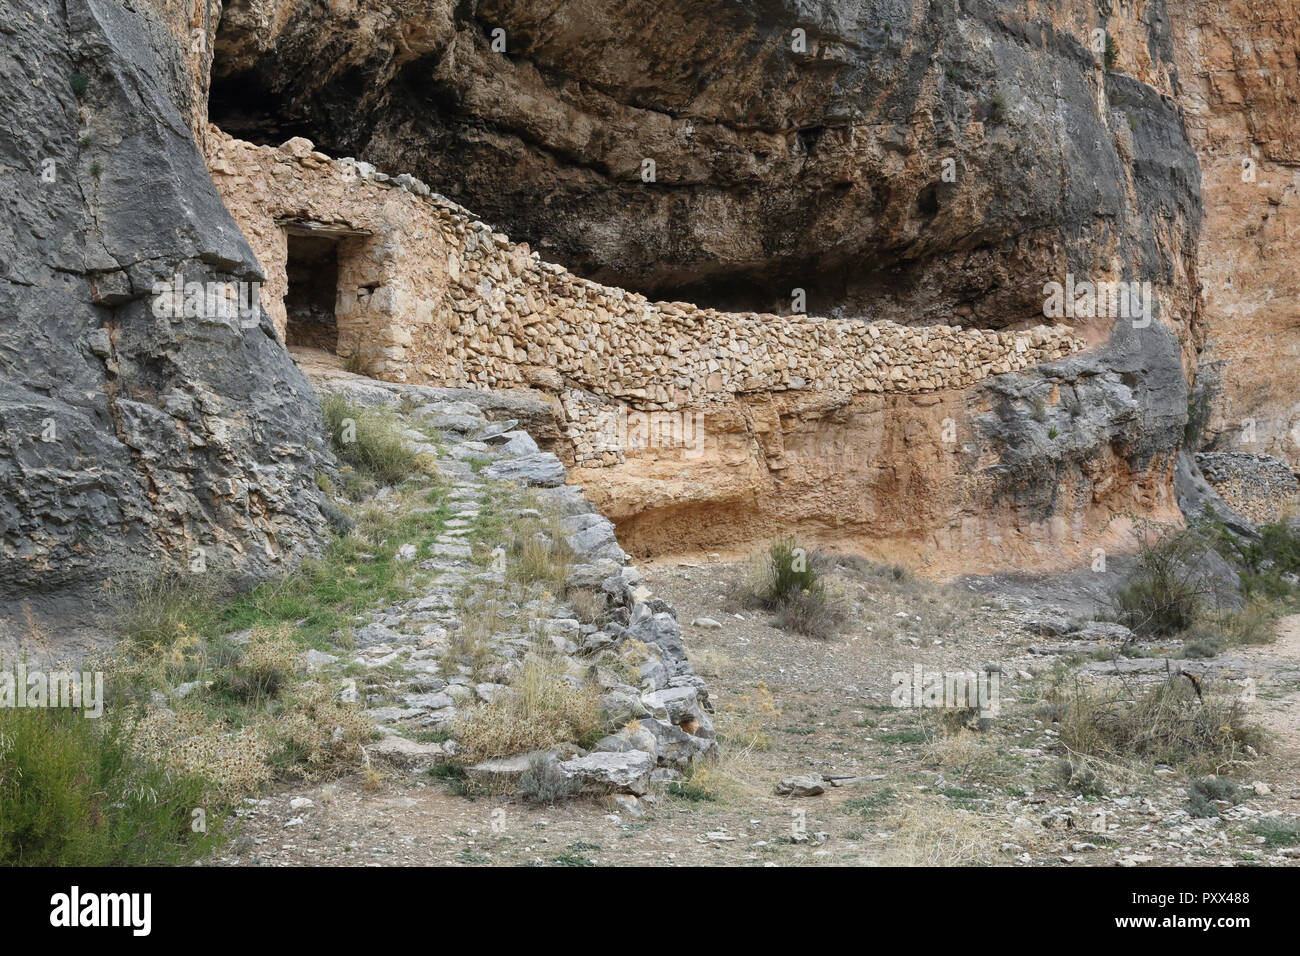 Un rifugio di pastori e bestiame in pietra del muro a secco all'interno di una grotta nella Red Rock ferroso del Barranco de la Hoz Seca canyon, Jaraba, Spagna Foto Stock